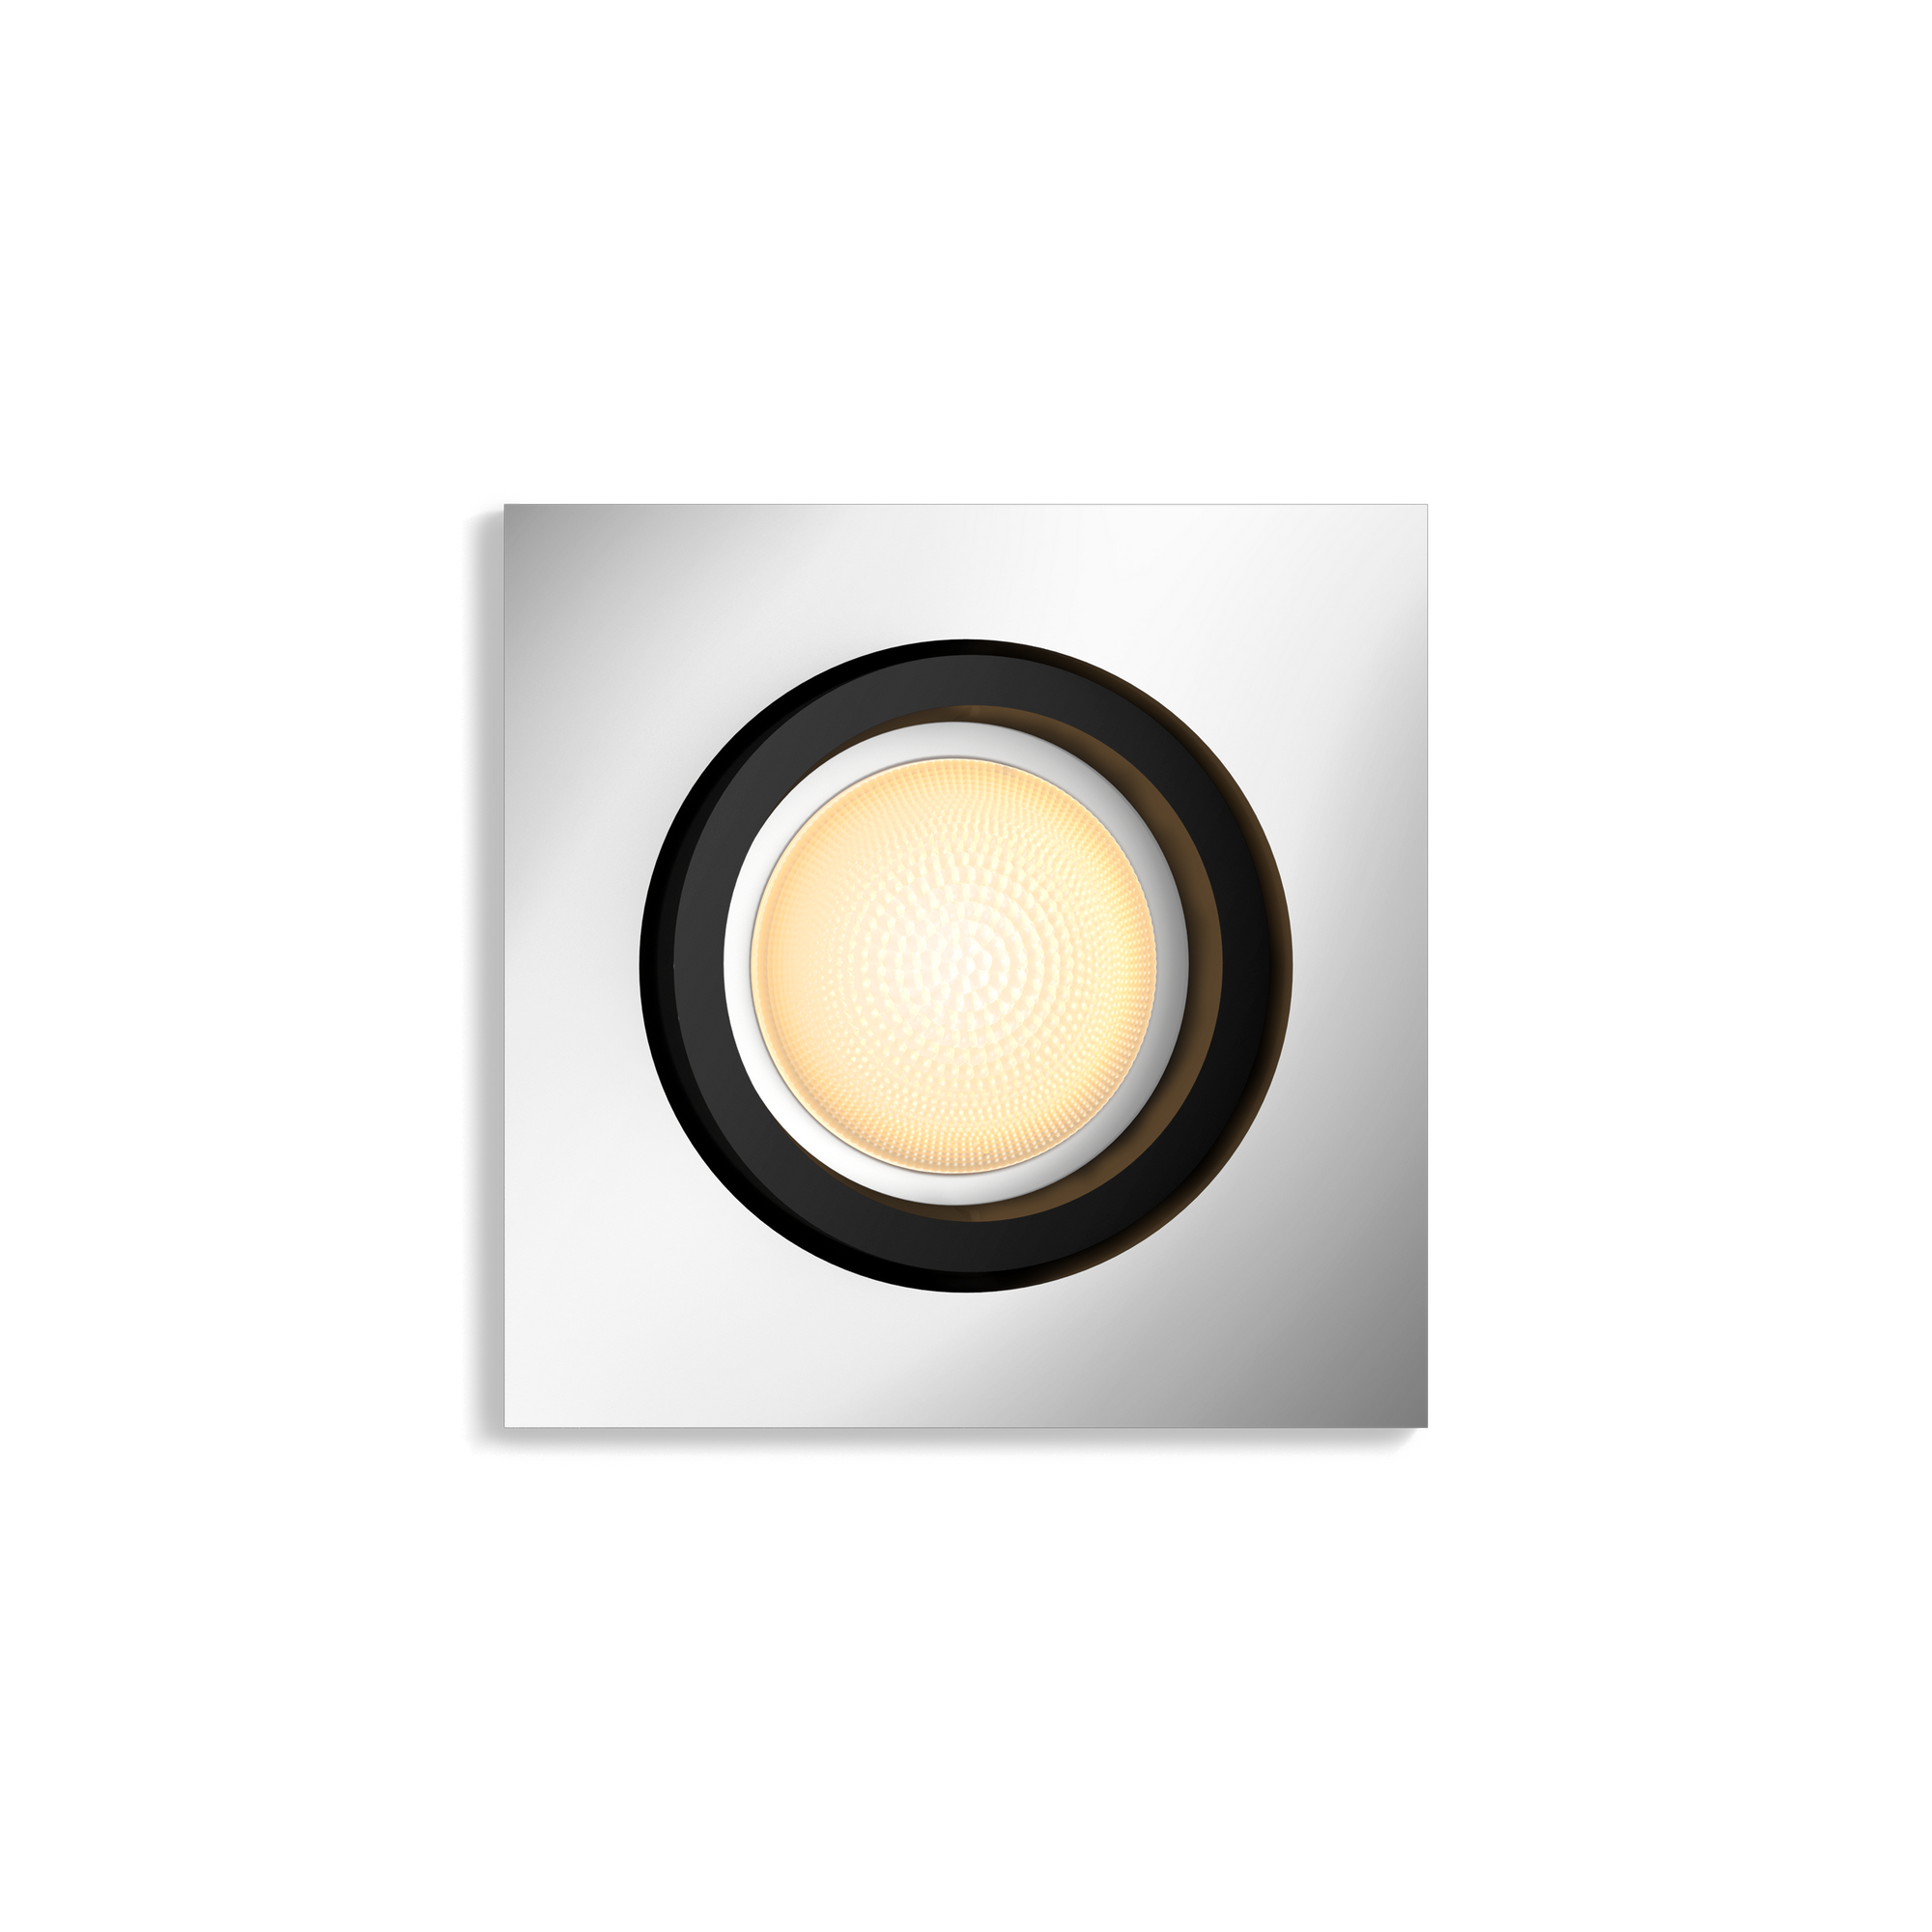 LED-Einbauspot 'Hue White Ambiance' Milliskin, eckig Erweiterung + product picture